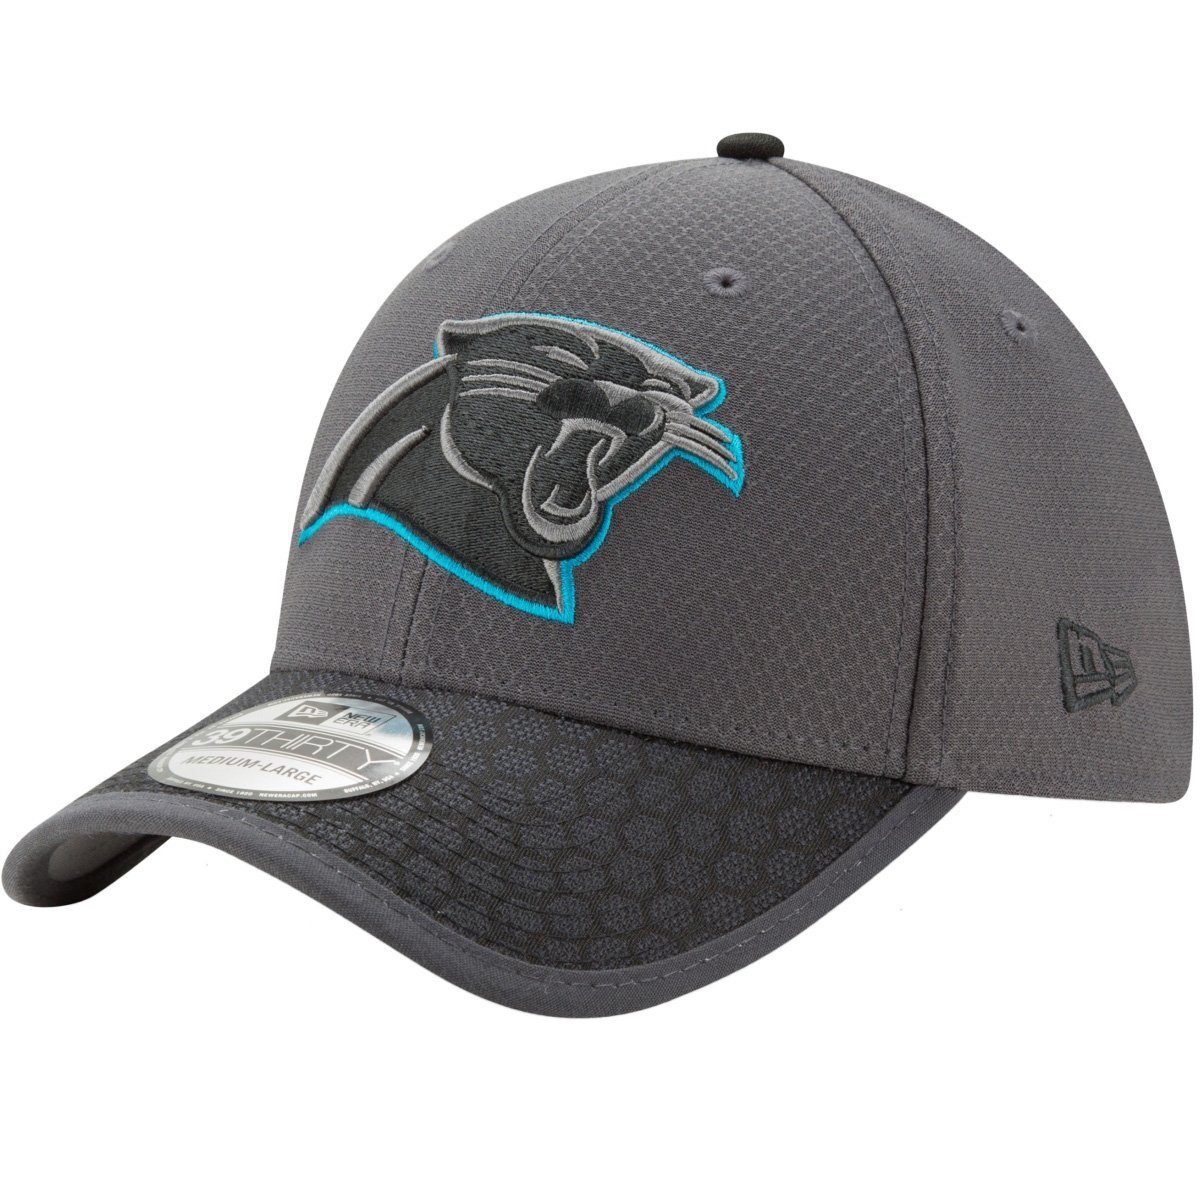 NFL Cap Panthers Carolina Flex 39Thirty New SIDELINE Era